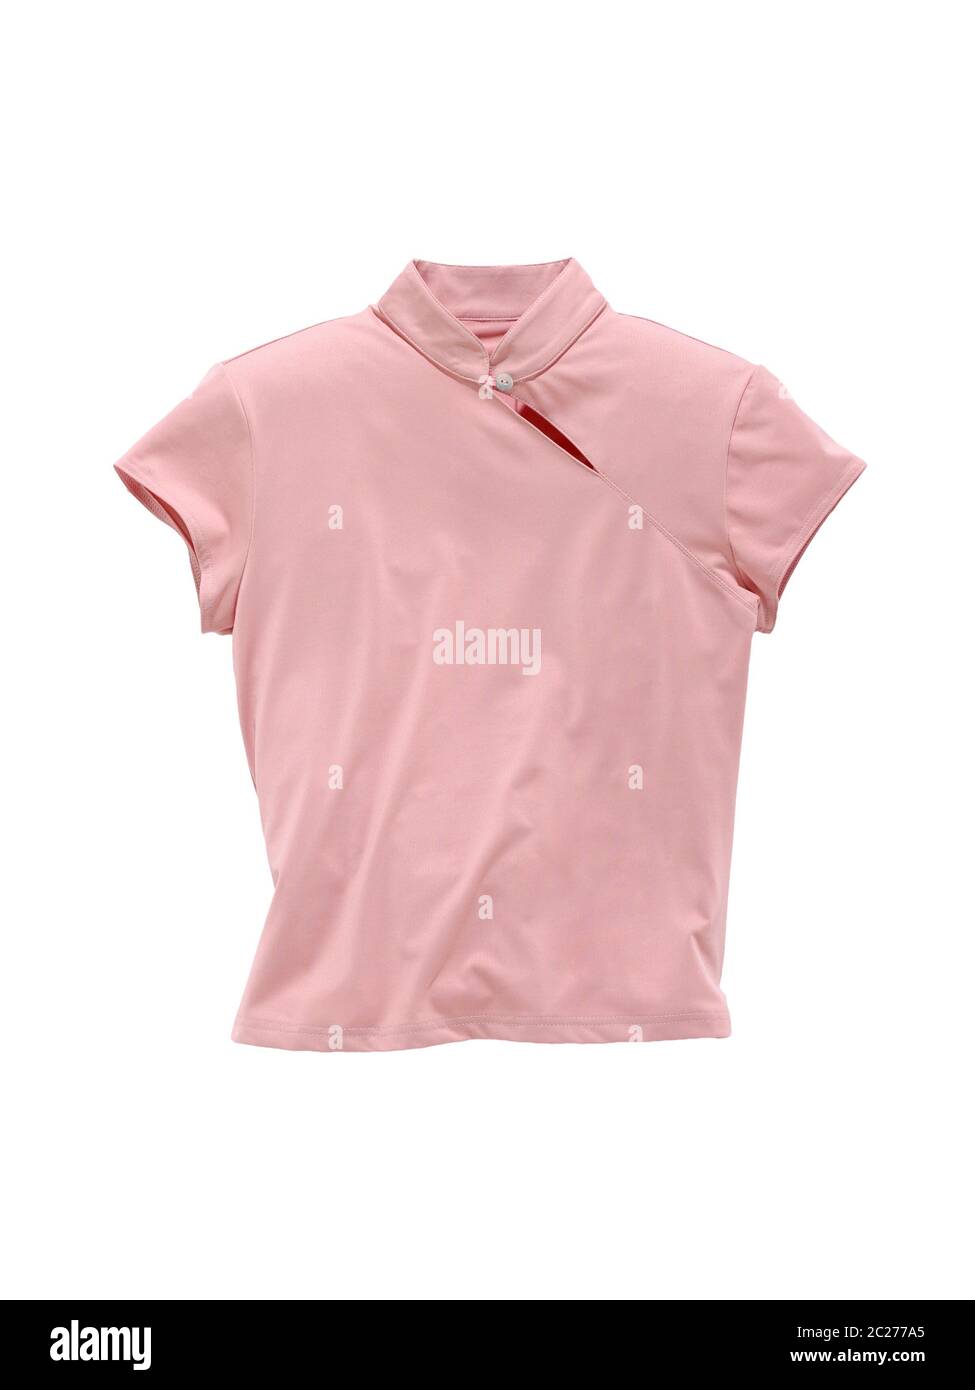 blouse sans manches rose isolée sur fond blanc Banque D'Images